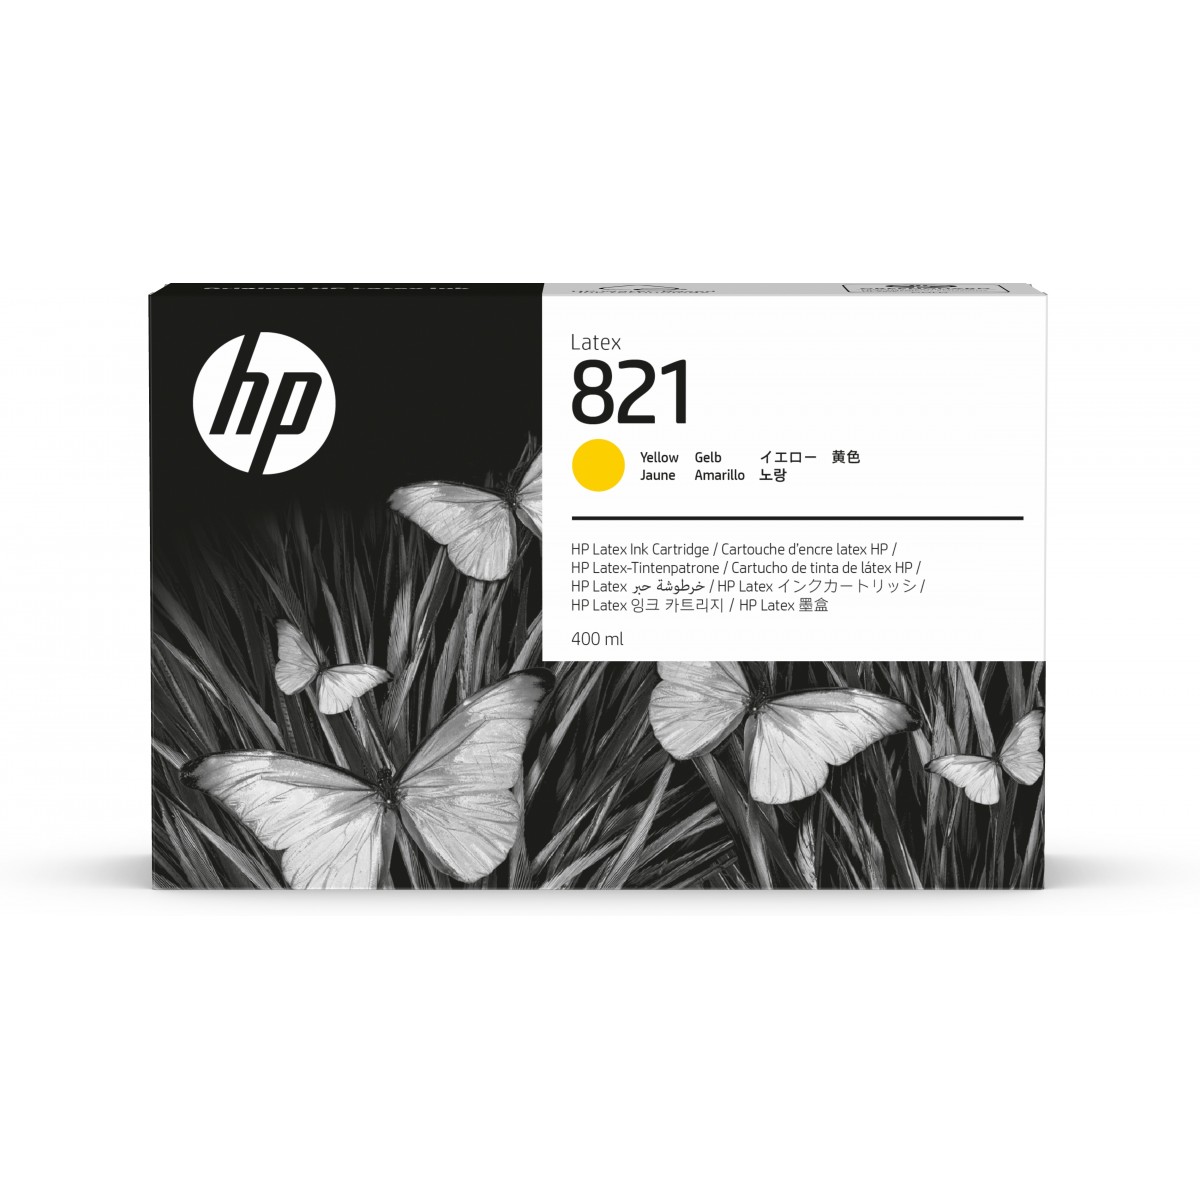 HP 821 - Original - Latex - Yellow - HP - HP Latex 110 - 115 - 400 ml